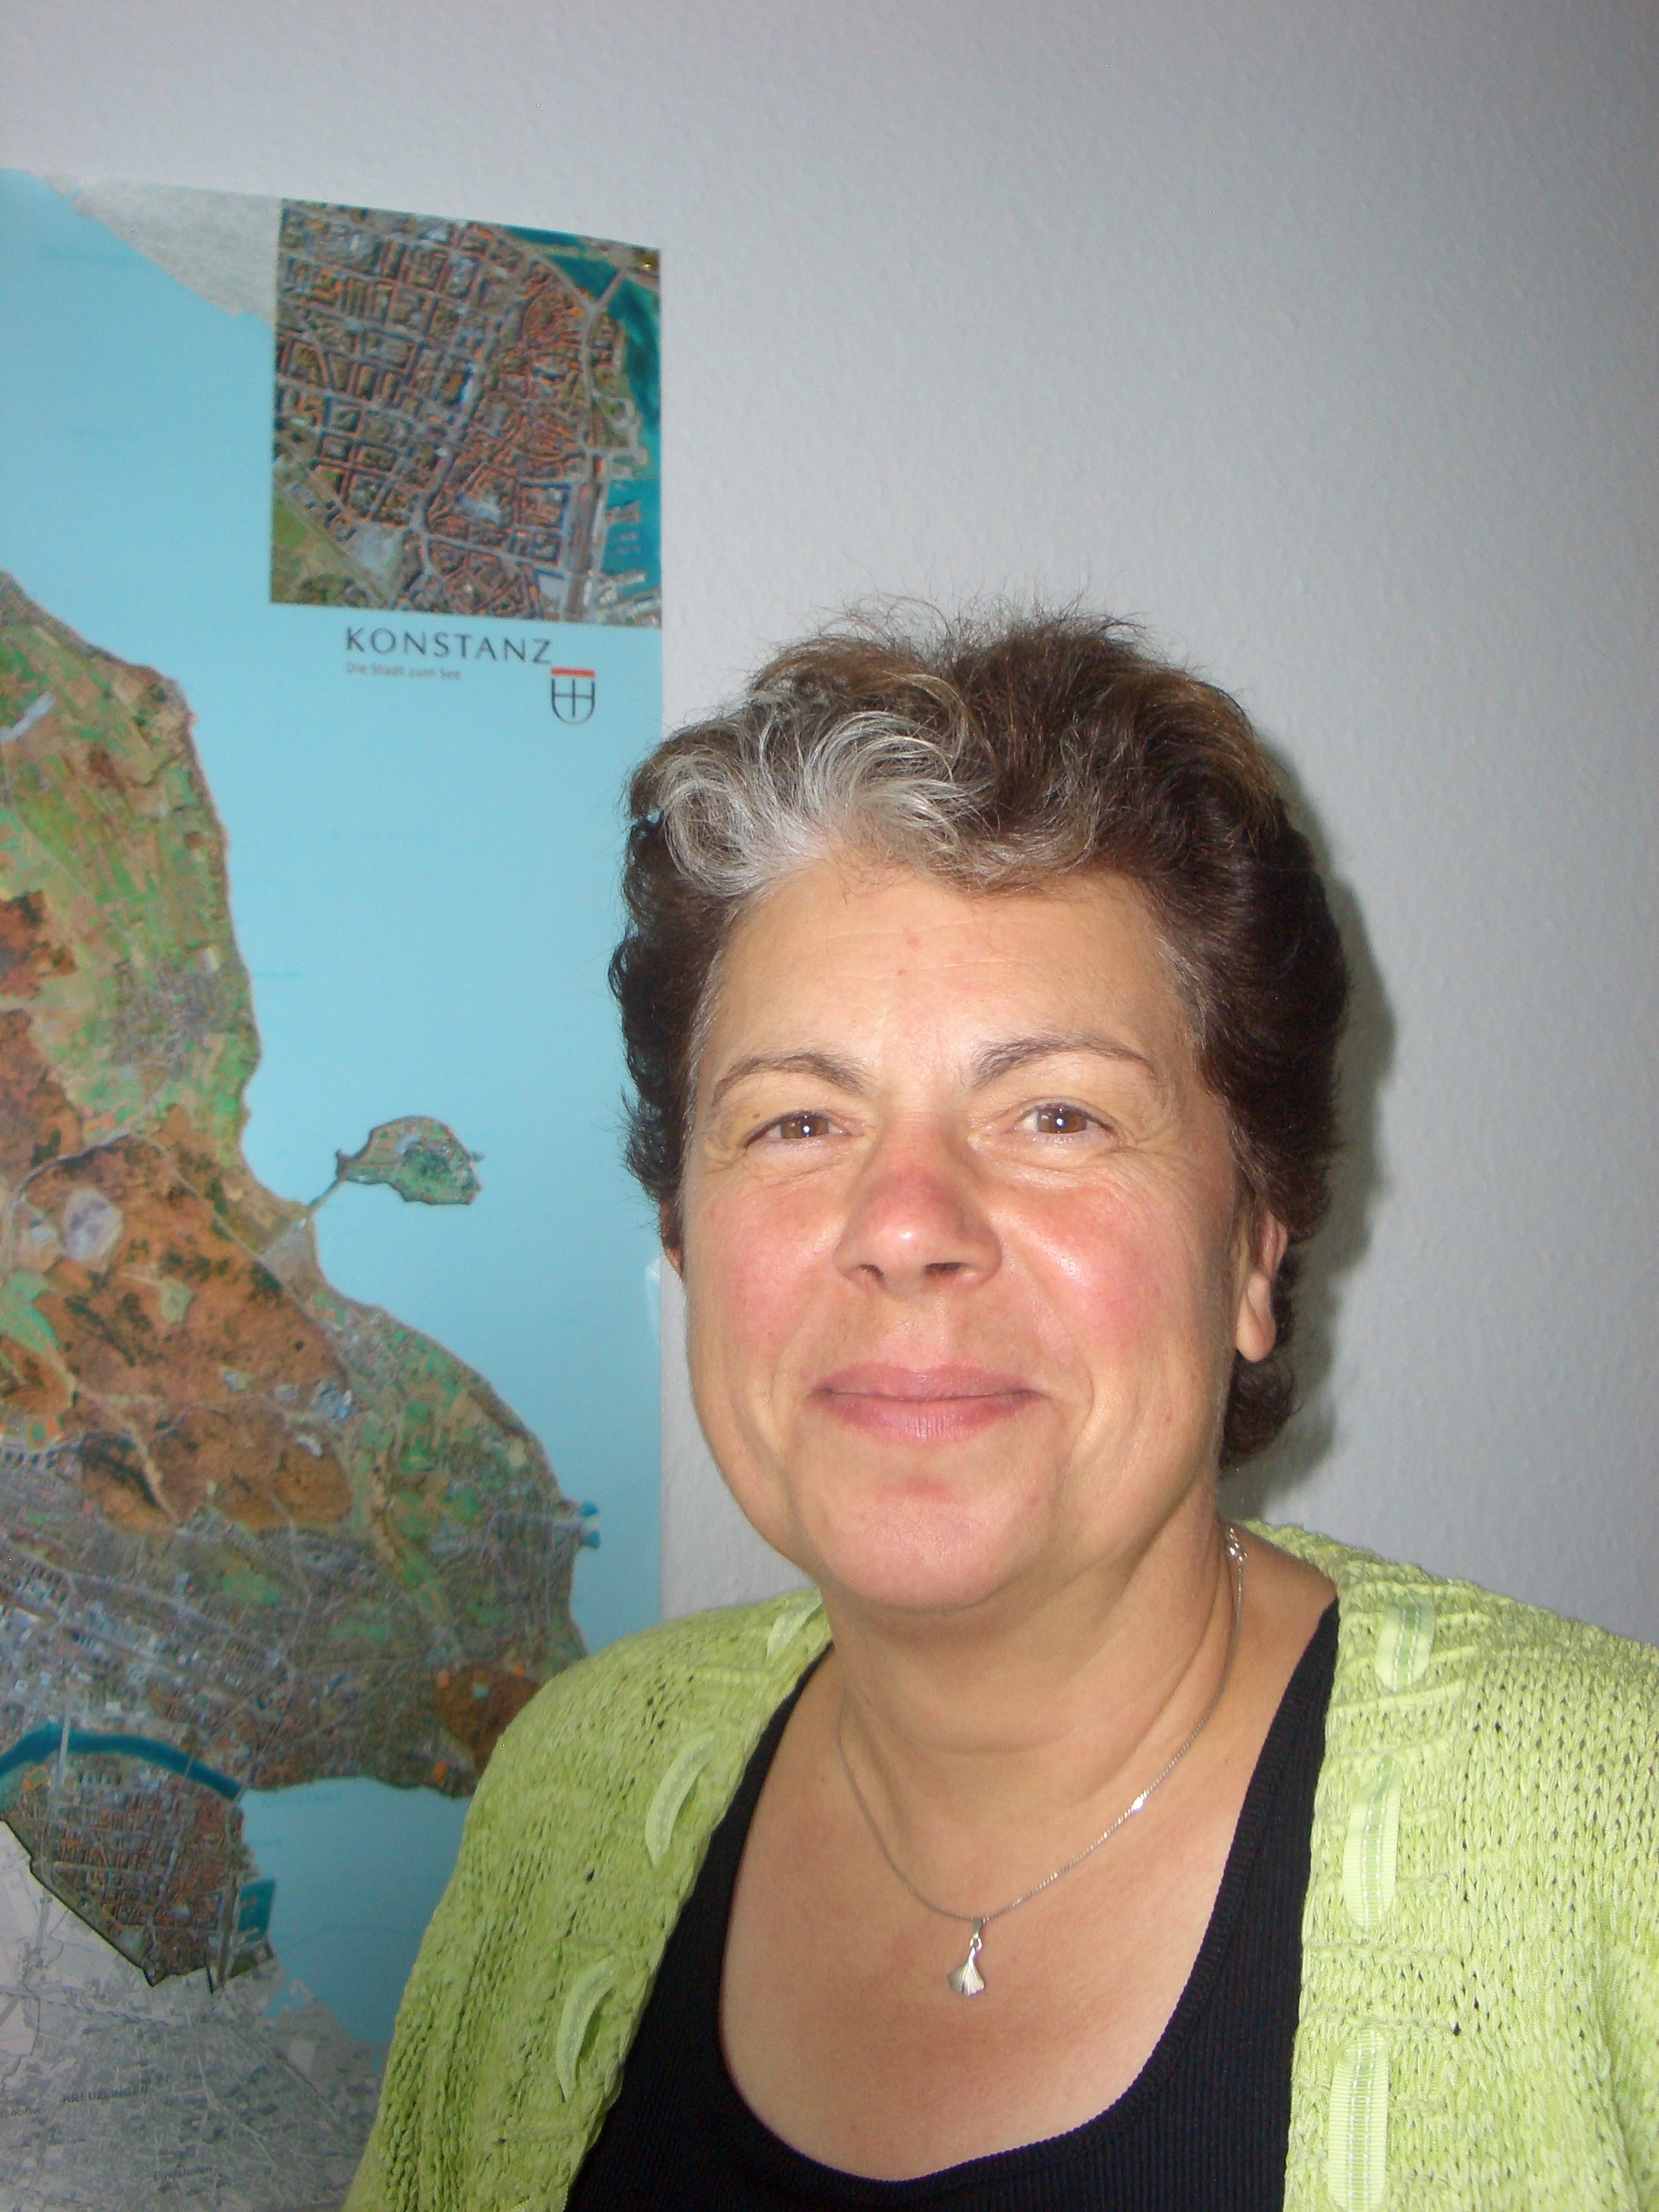 Dr. Ursula Herold-Schmidt: project leader of the 